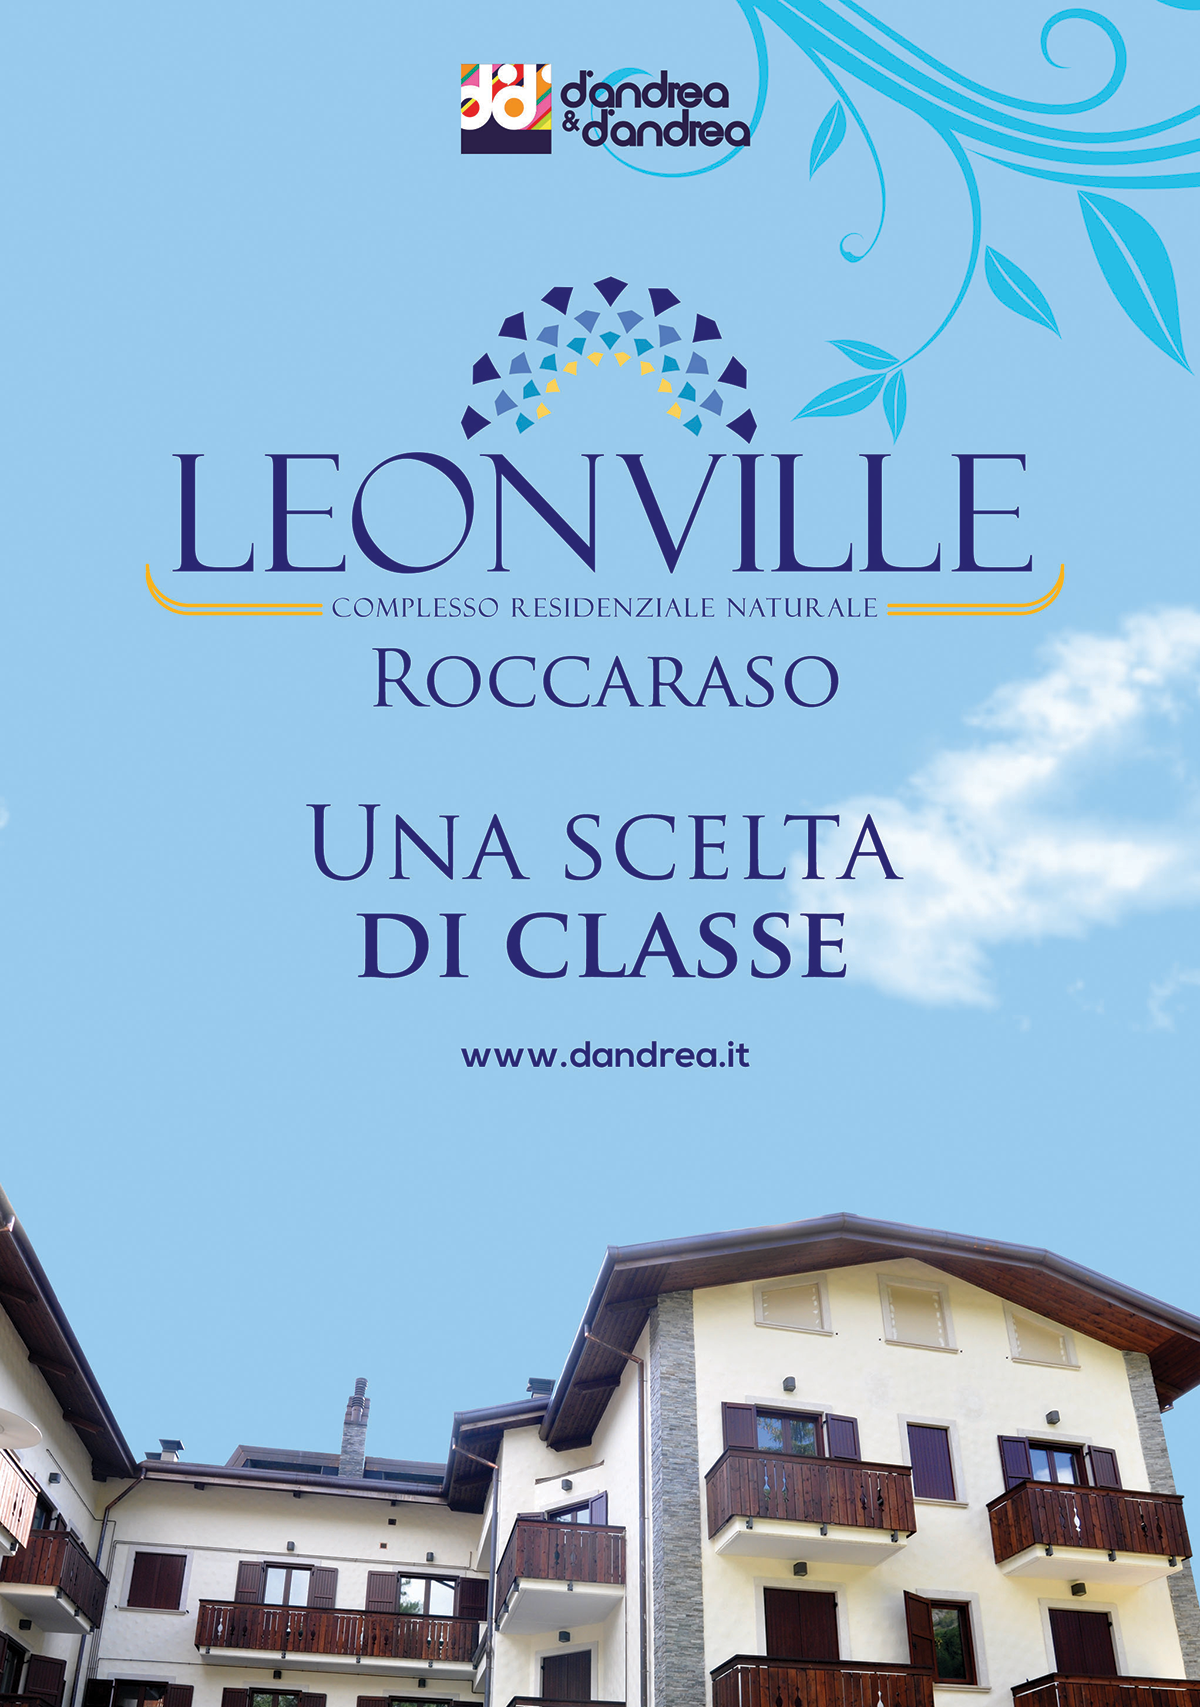 Ideazione e realizzazione layout per complesso residenziale 'Leonville' a Roccaraso  (Aq)